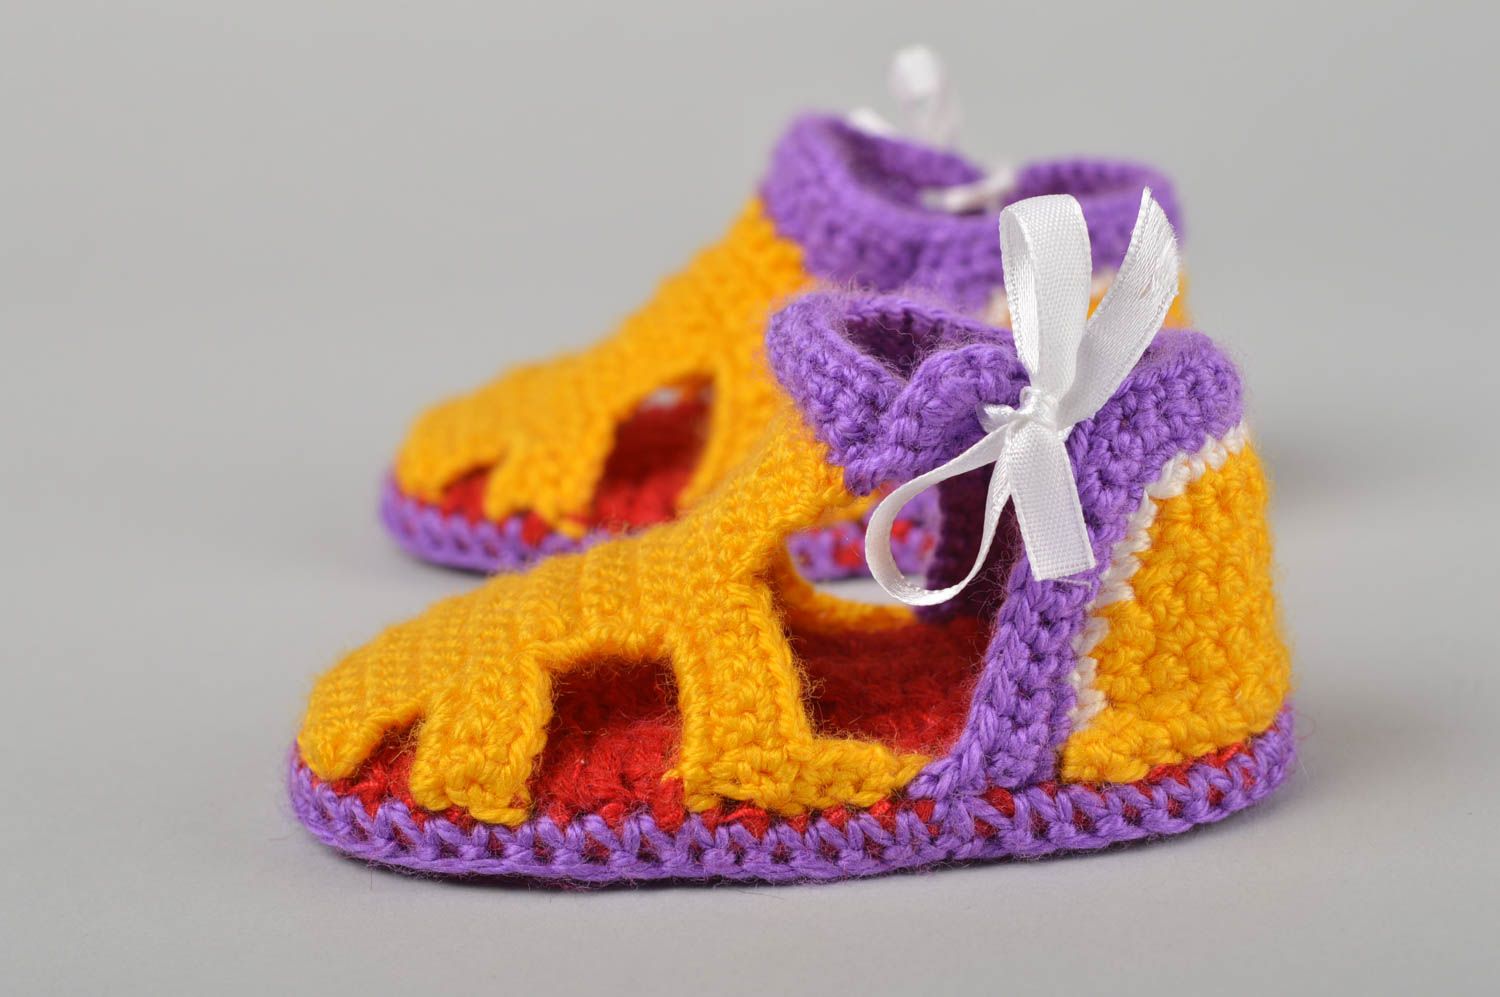 Chaussons de bébé au crochet faits main sandales en coton Vêtement pour bébé photo 3